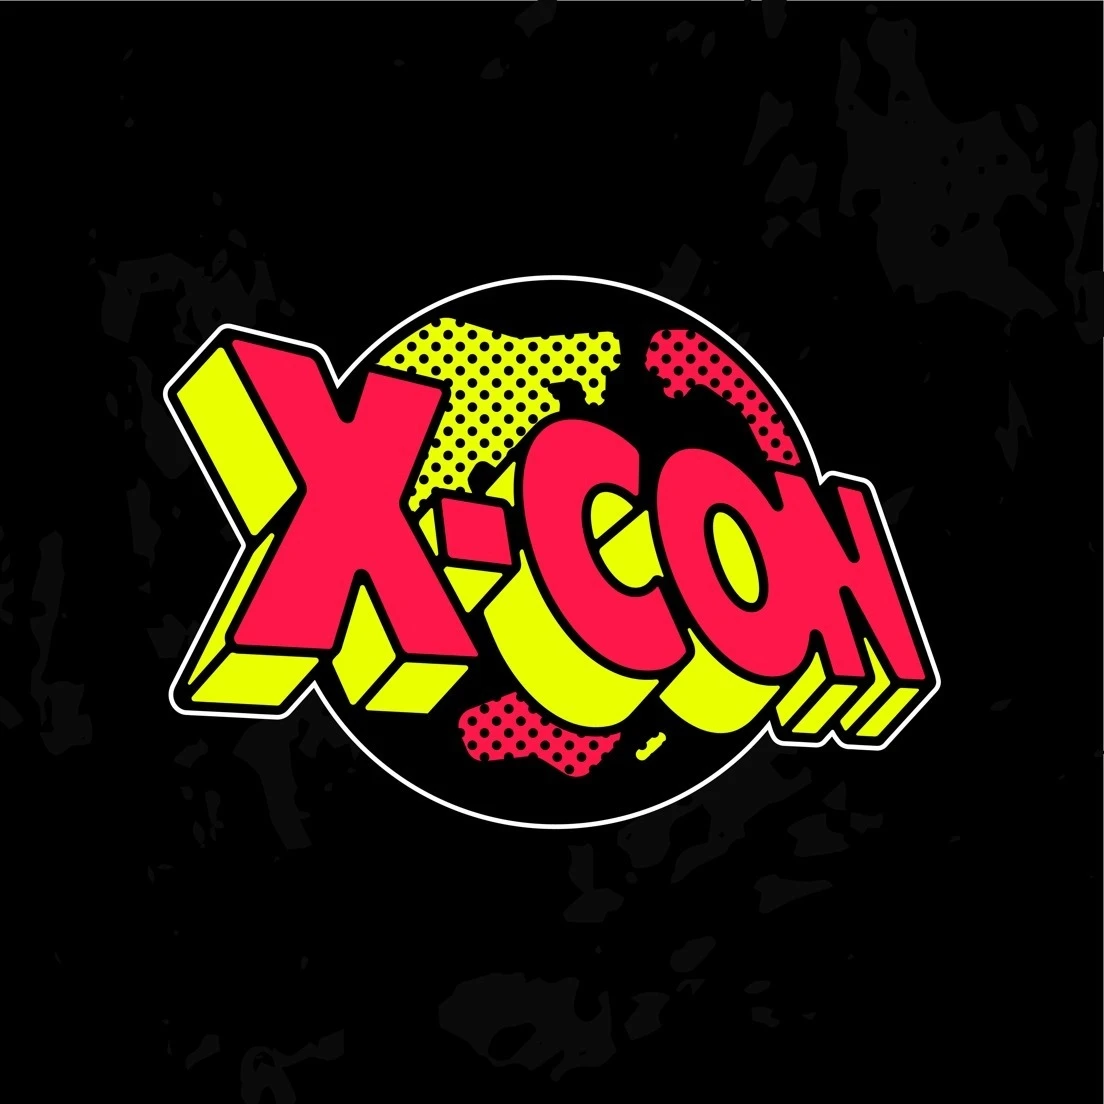 開催中止が発表された音楽フェス「X-CON」